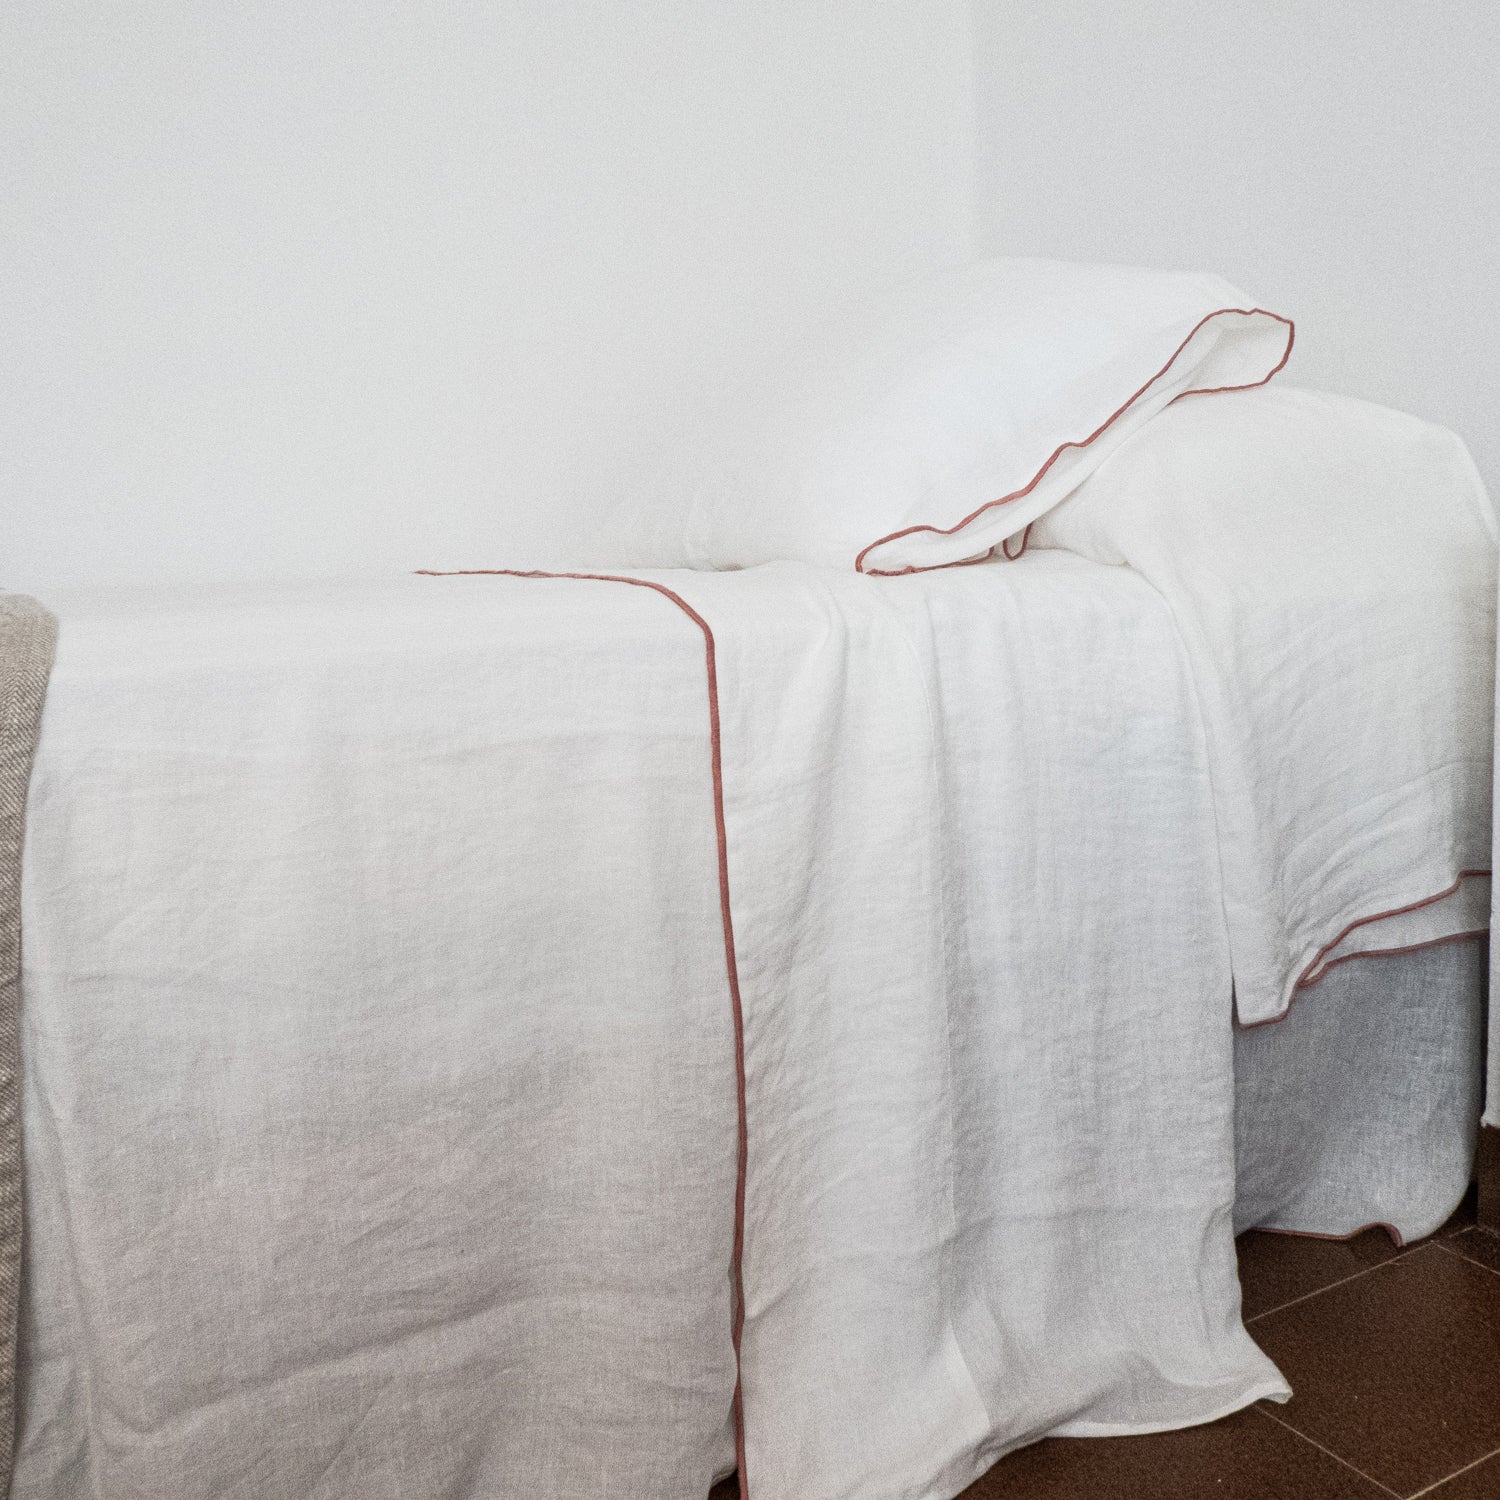 Detalle de sábanas con repulgo de color sobre lino blanco.